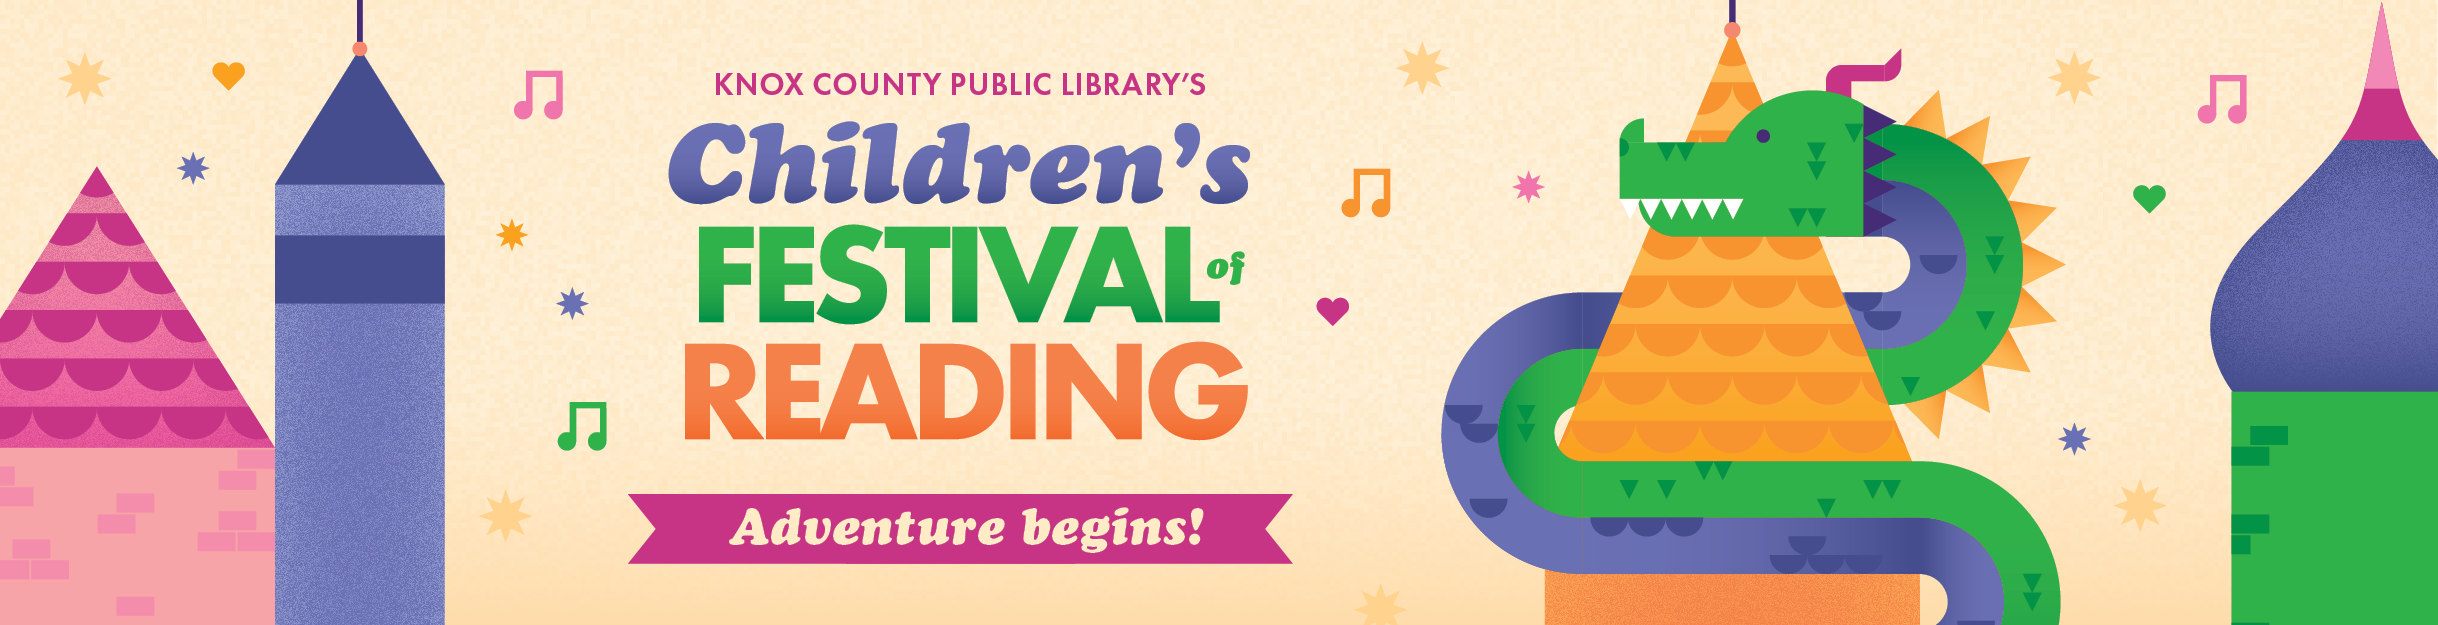 Children's Festival of Reading - Adventure begins!